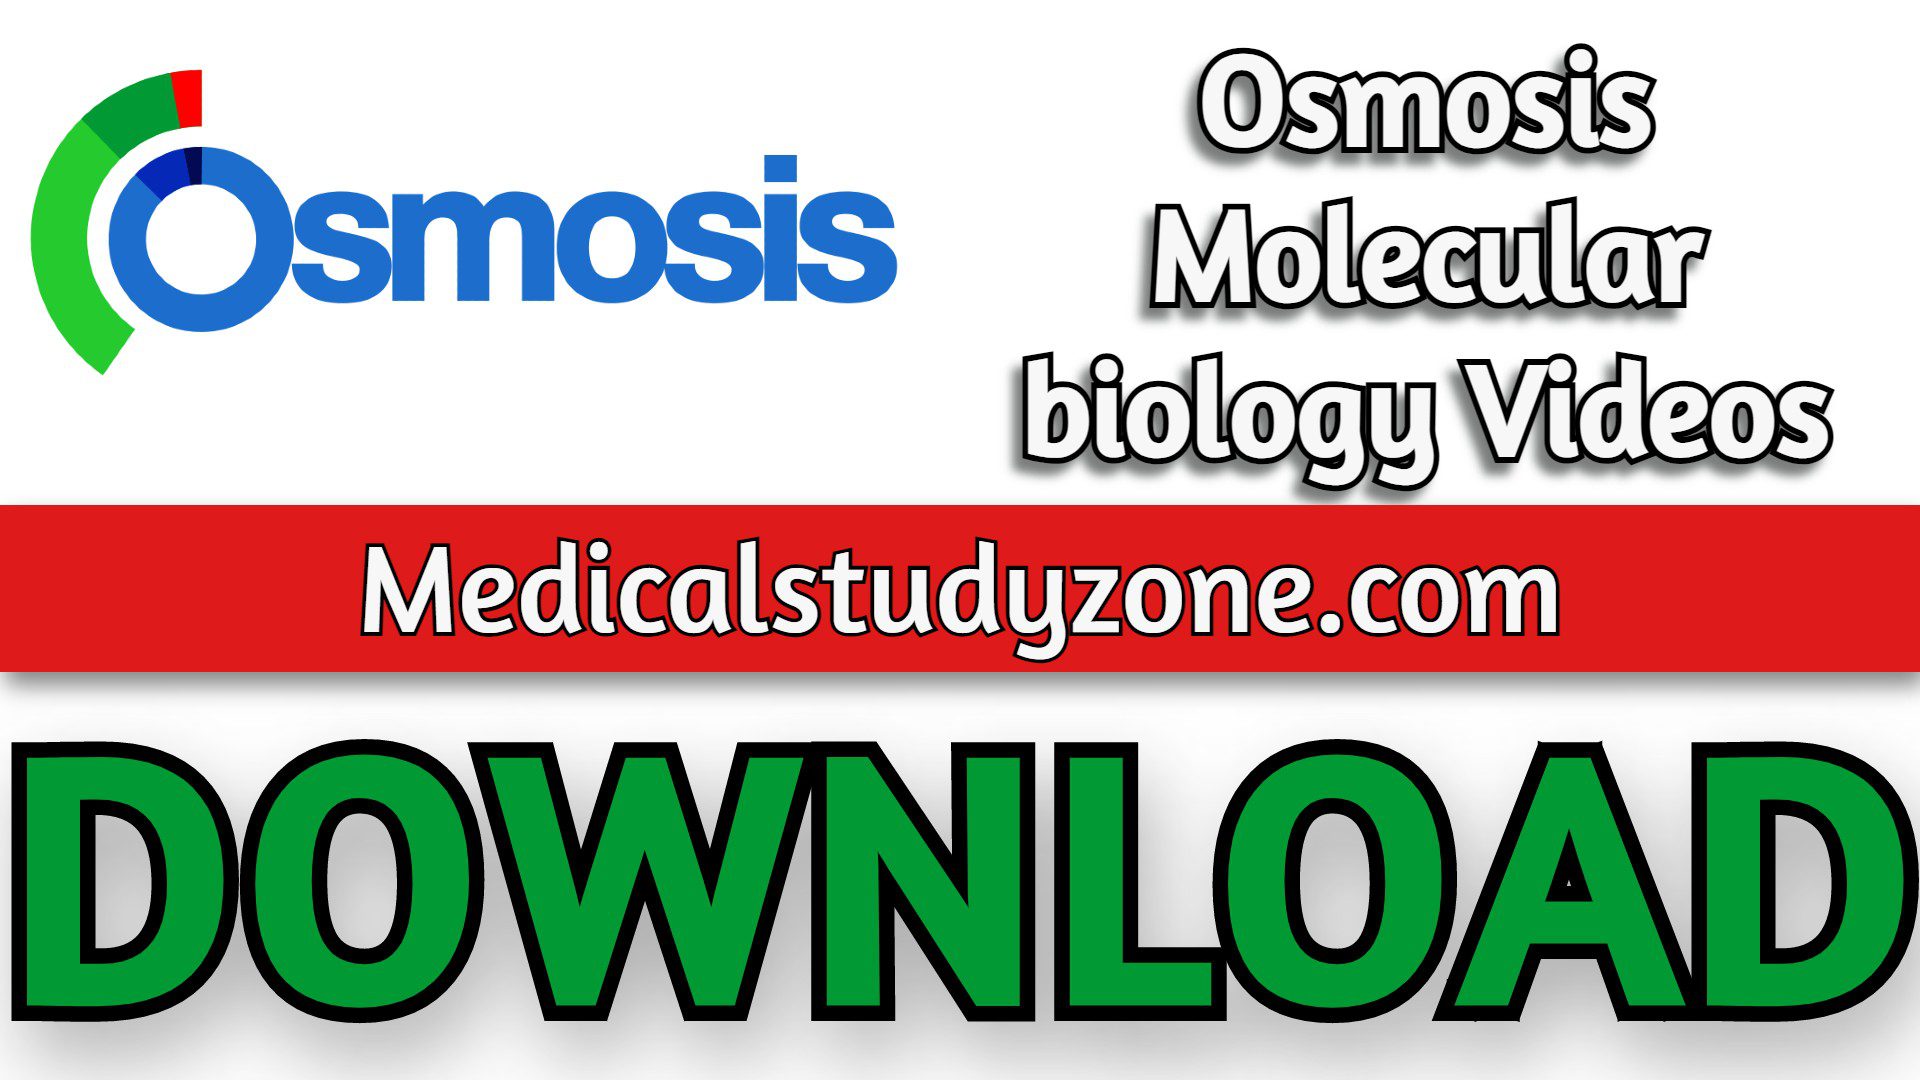 Osmosis Molecular biology Videos 2023 Free Download